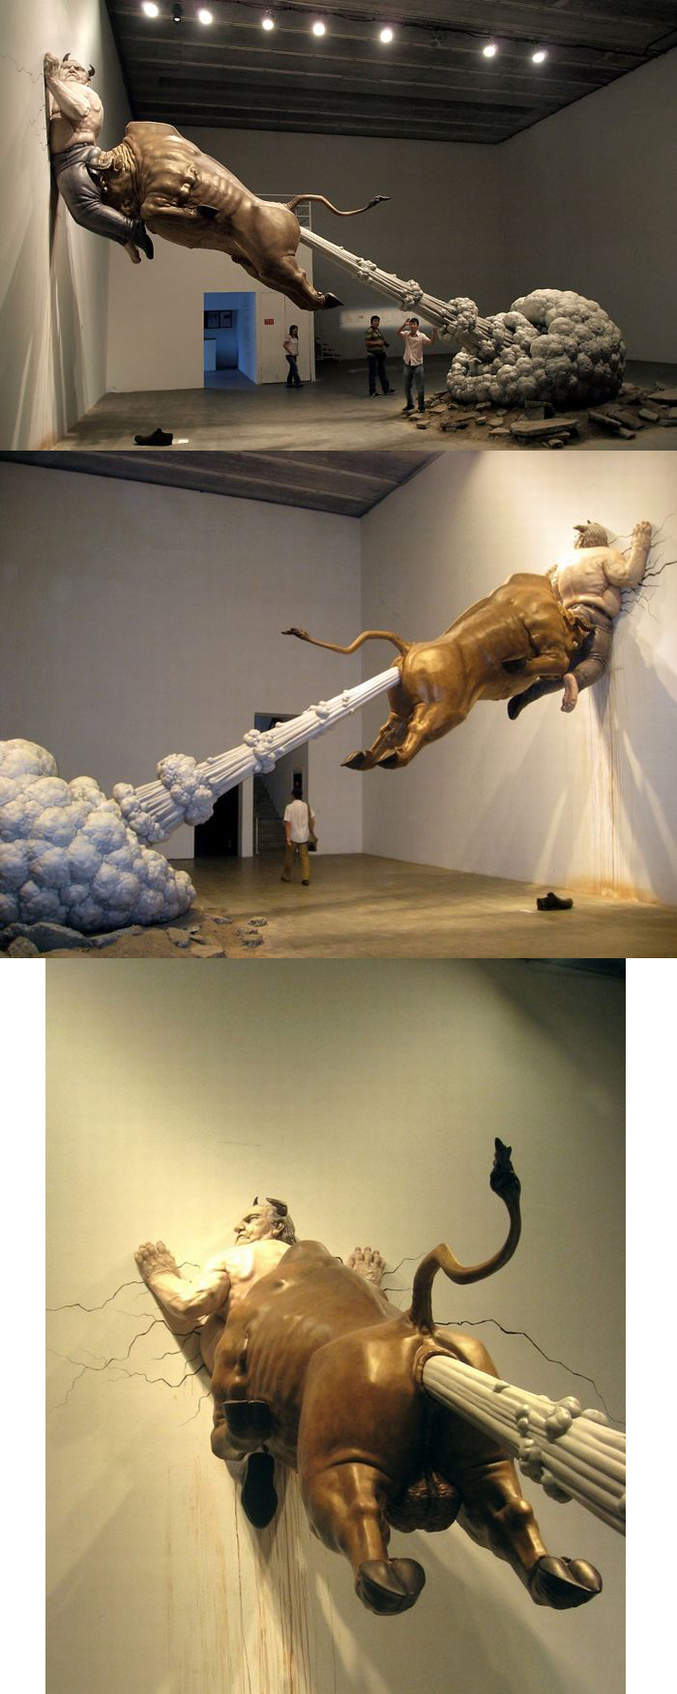 Un taureau, de la fumée, un homme contre un mur... Une sculpture !